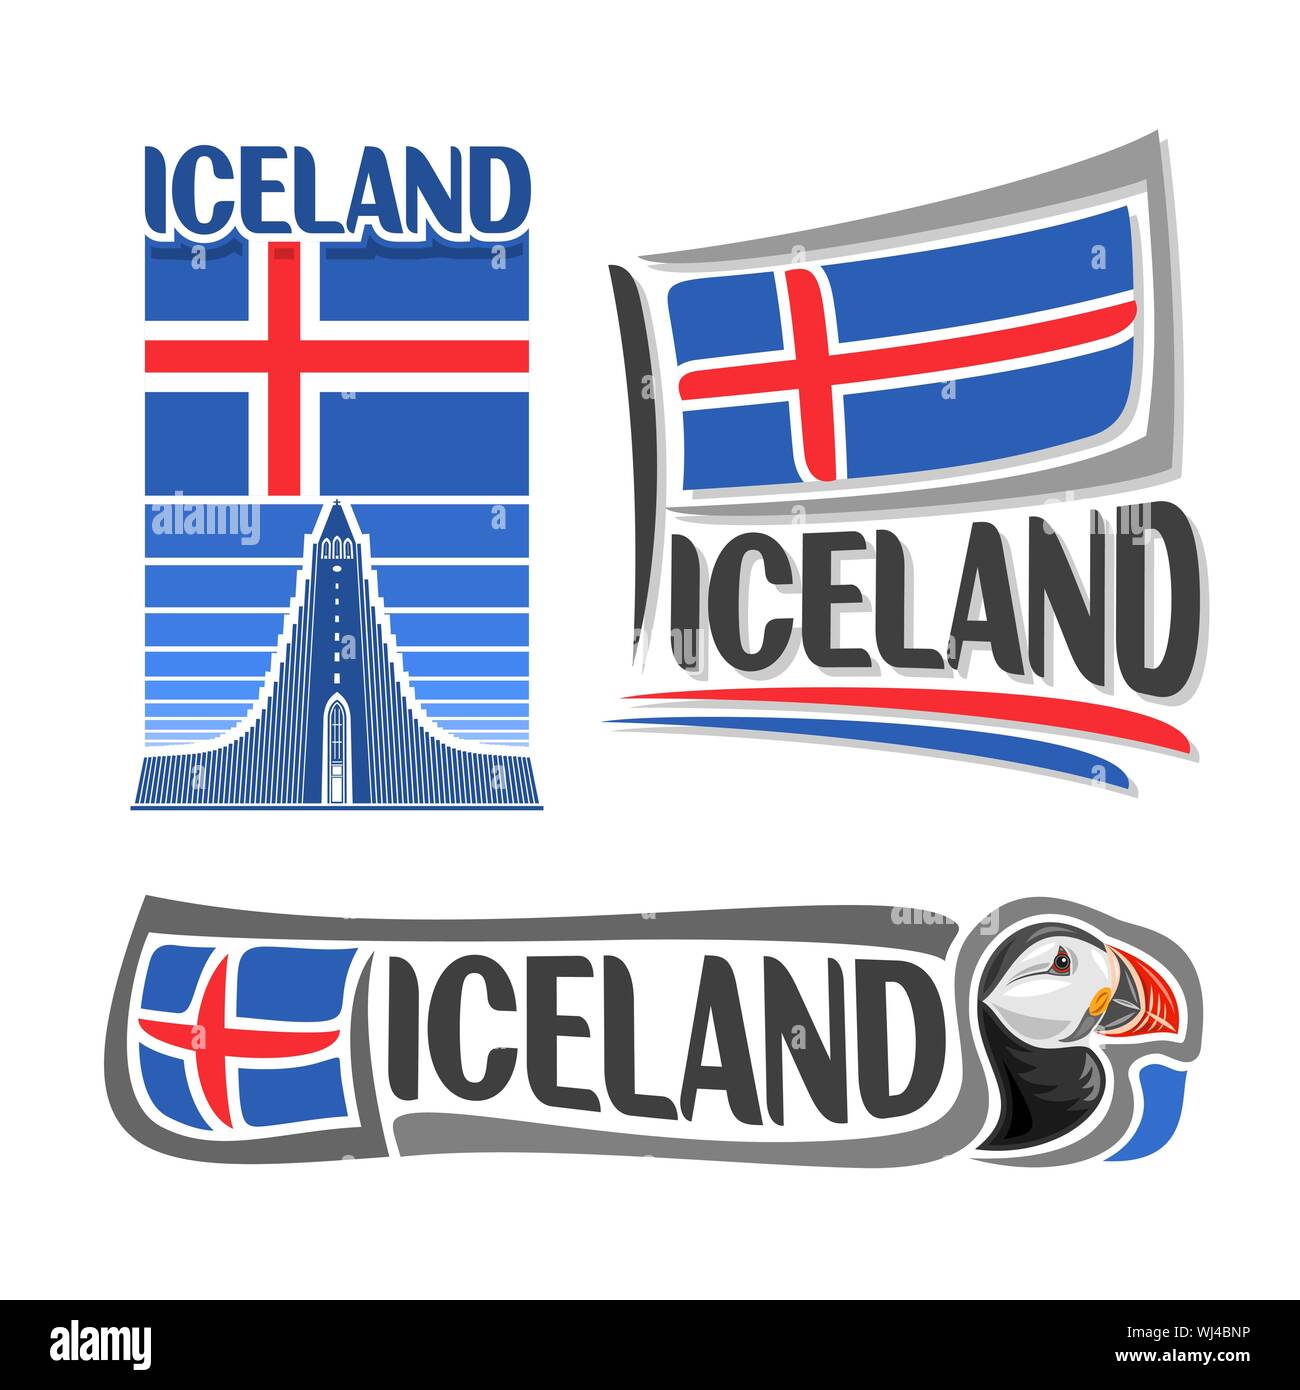 Illustrazione Vettoriale logo per l'Islanda, costituito da 3 illustrazioni isolate: Icelandic National bandiera di stato immagine su Hallgrimskirkja, simbolo di Icel Illustrazione Vettoriale